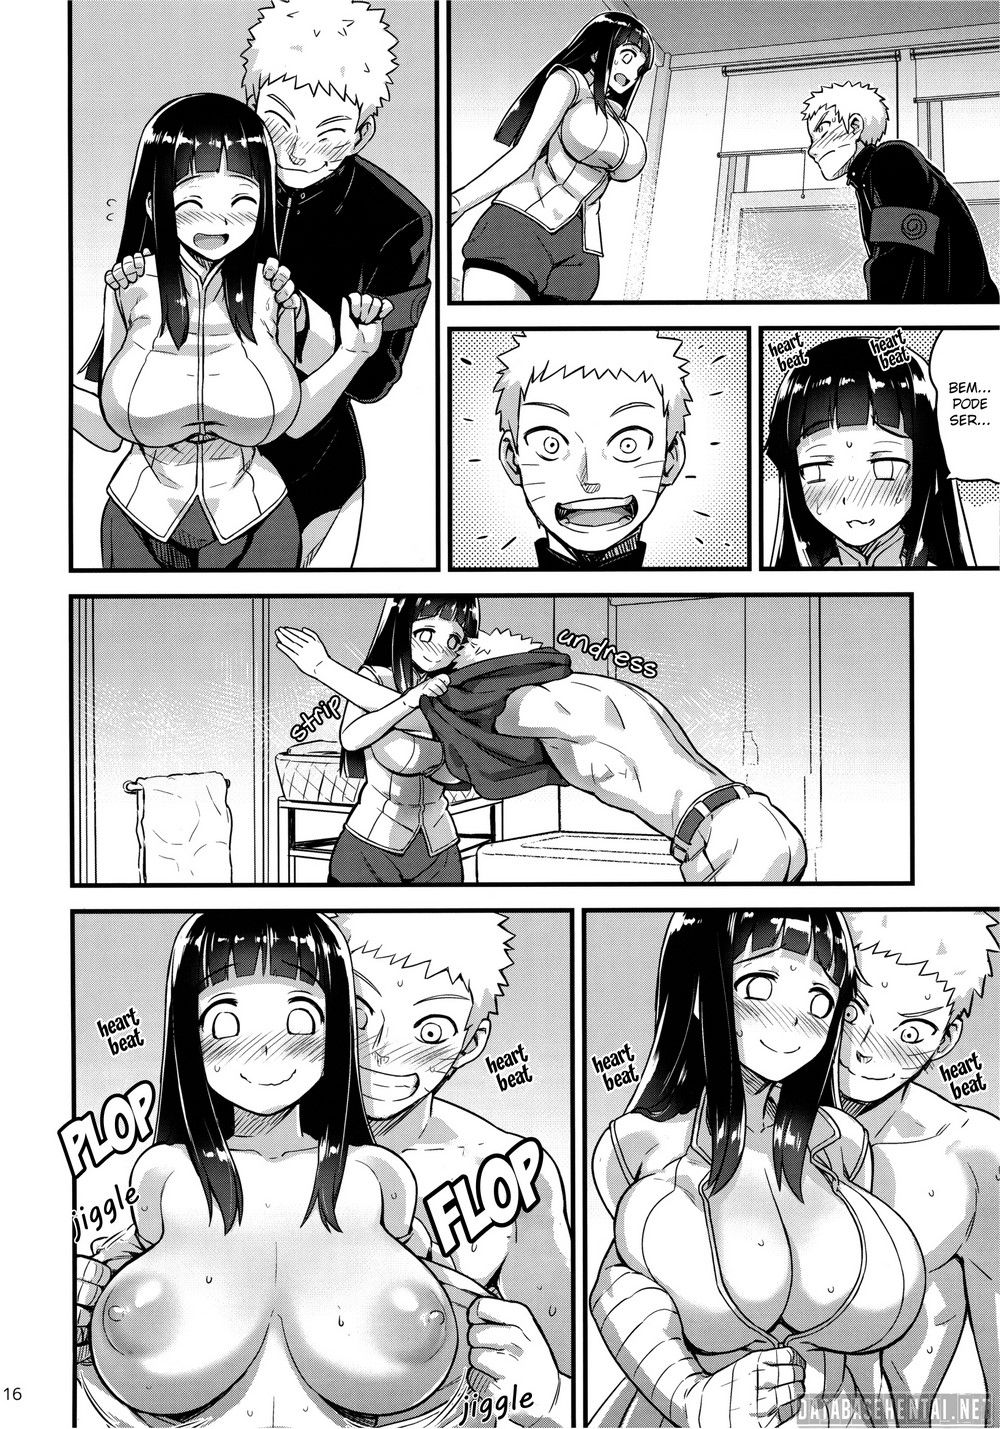 Naruto fazendo um filho com à Hinata